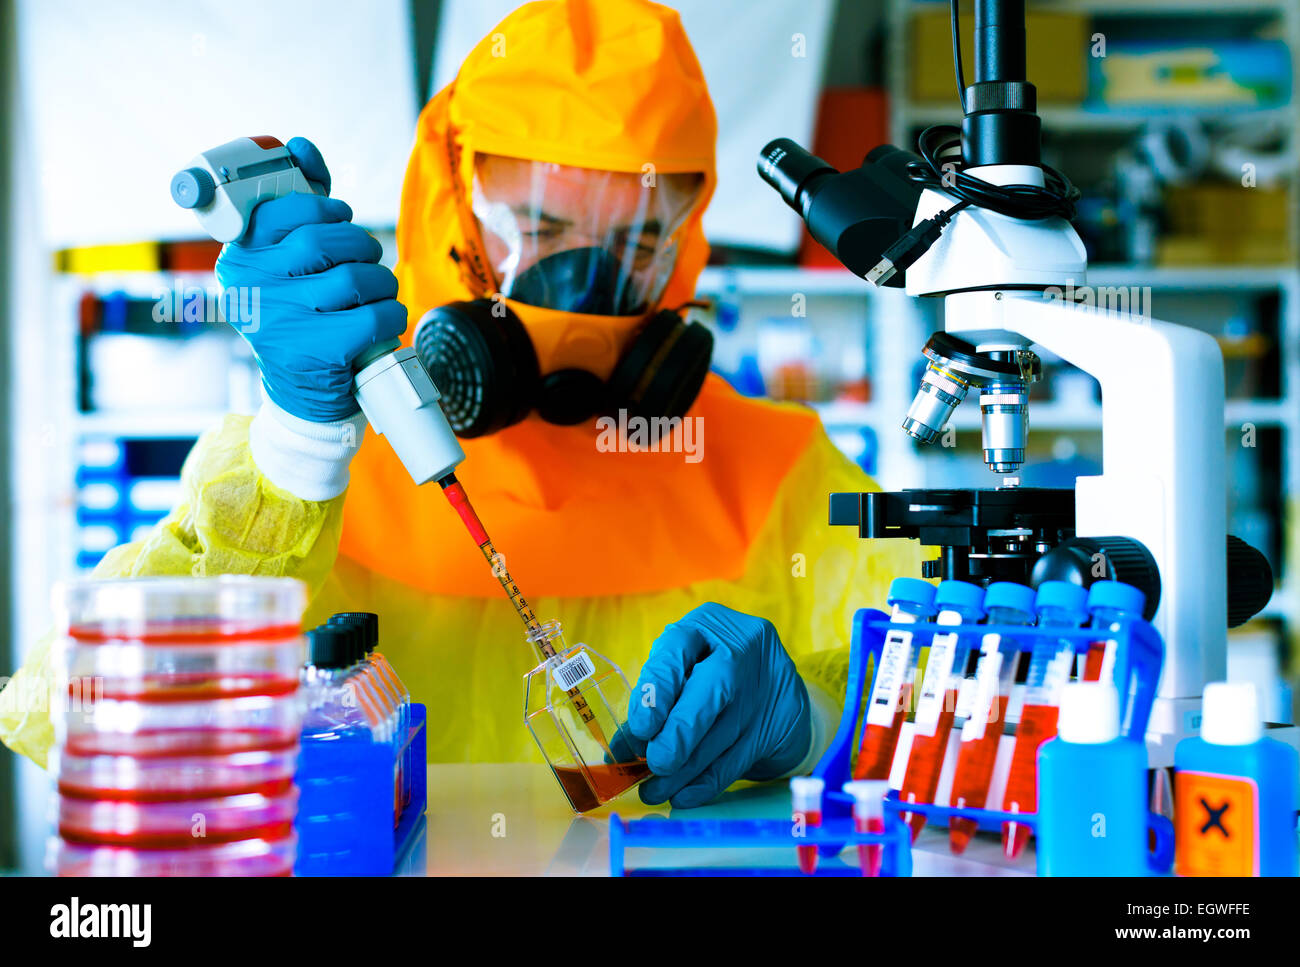 L'essai d'un vaccin contre l'infection à virus Ebola, un scientifique in protective suit avec une pipette et un microscope dans un laboratoire Banque D'Images